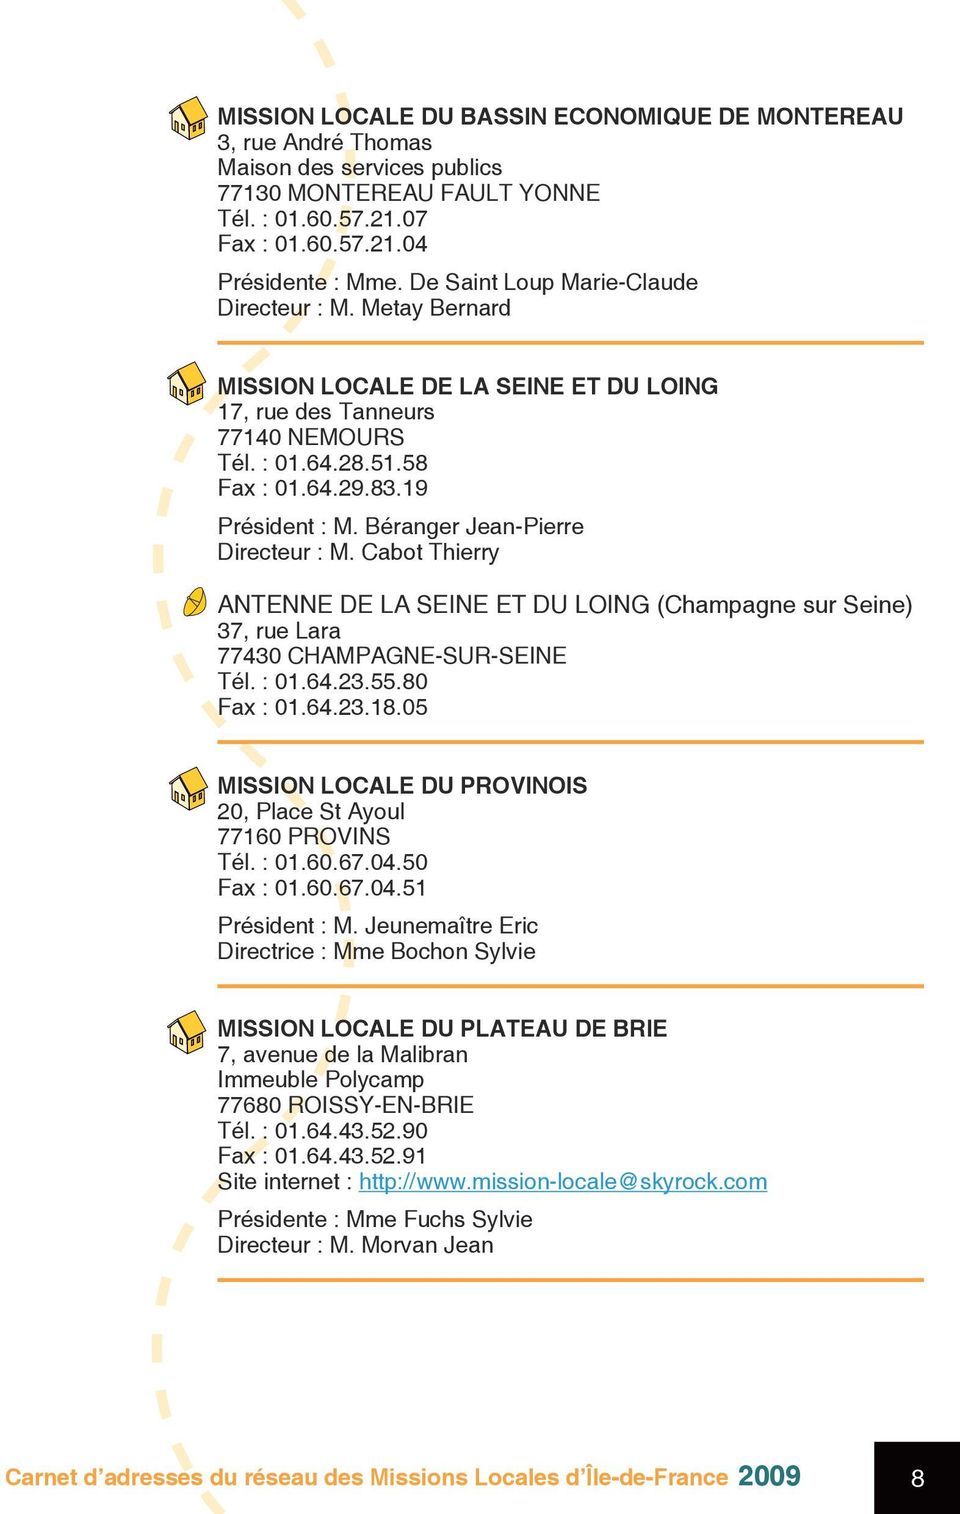 Béranger Jean-Pierre Directeur : M. Cabot Thierry ANTENNE DE LA SEINE ET DU LOING (Champagne sur Seine) 37, rue Lara 77430 CHAMPAGNE-SUR-SEINE Tél. : 01.64.23.55.80 Fax : 01.64.23.18.